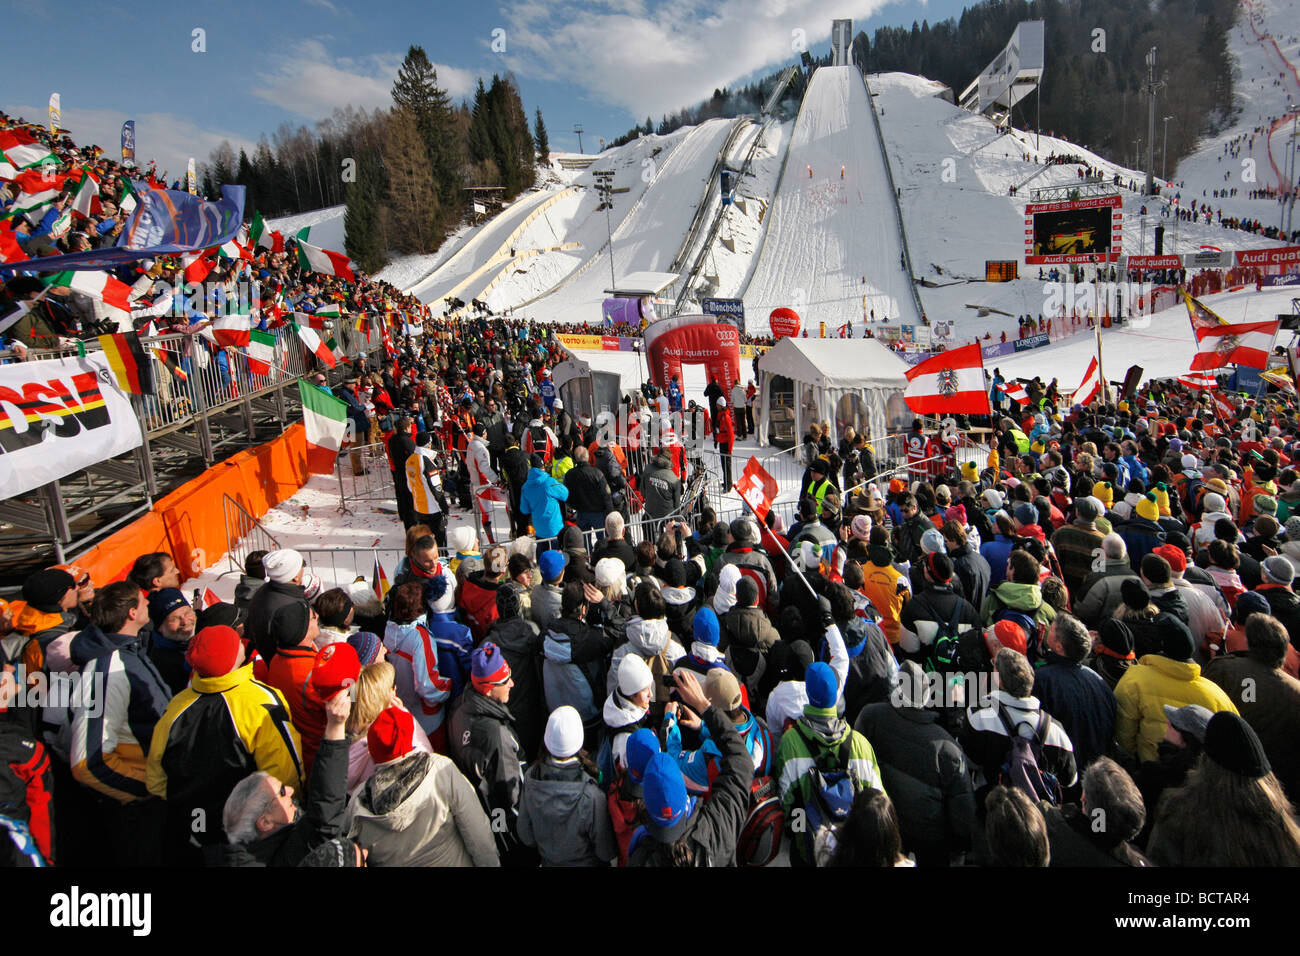 Ski world cup immagini e fotografie stock ad alta risoluzione - Alamy